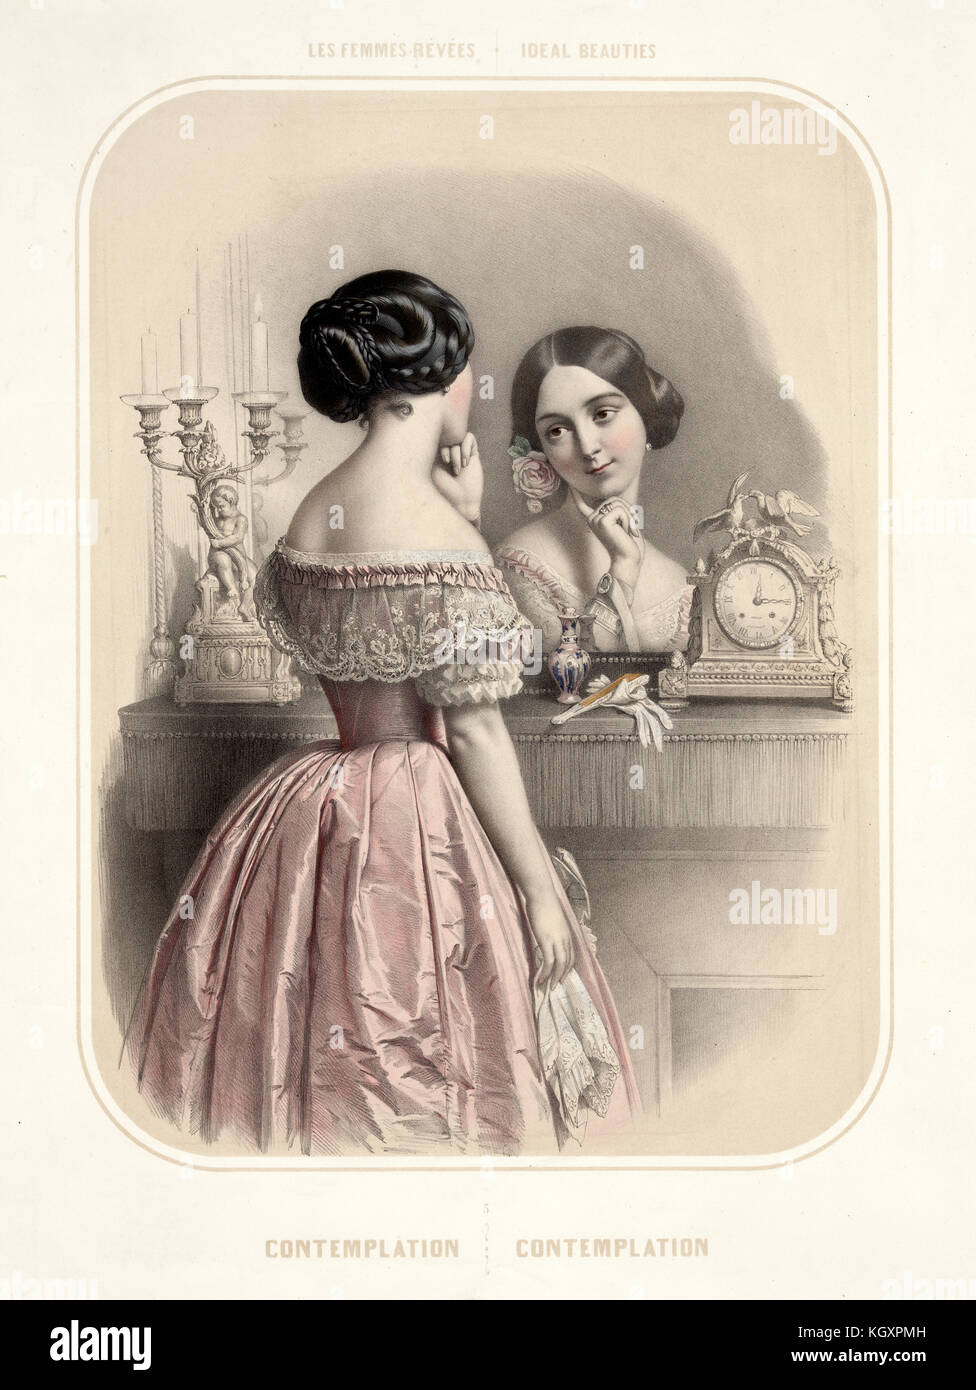 Vecchia immagine raffigurante donna che guarda a se stessa in uno specchio. Da Alophe, publ. in New York, 1851 Foto Stock